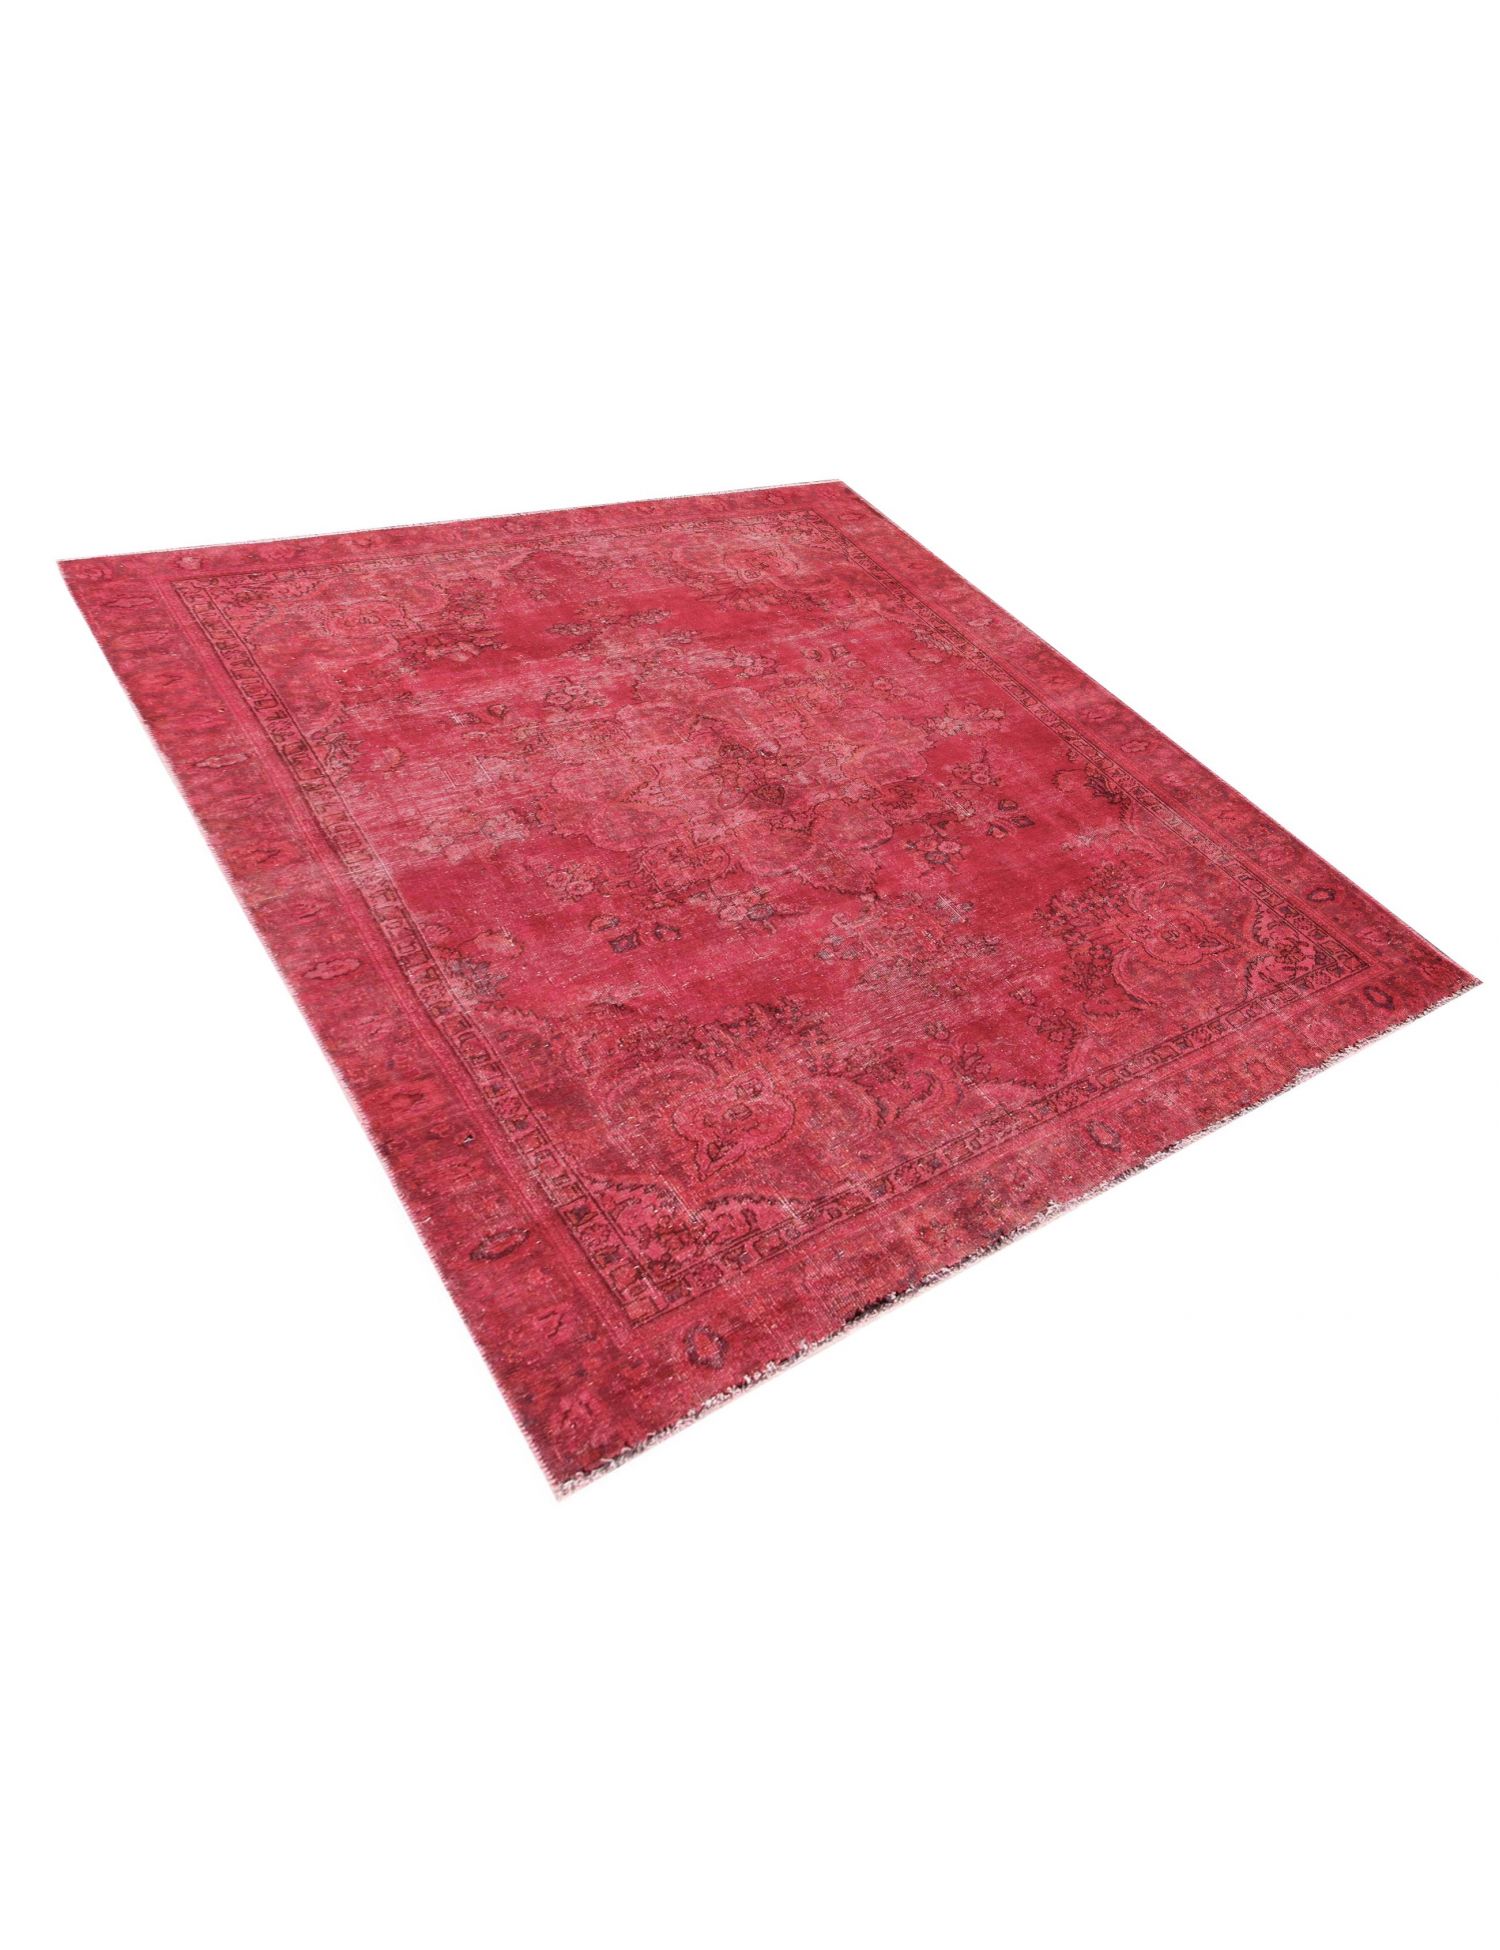 Persisk Vintagetæppe  rød <br/>260 x 182 cm